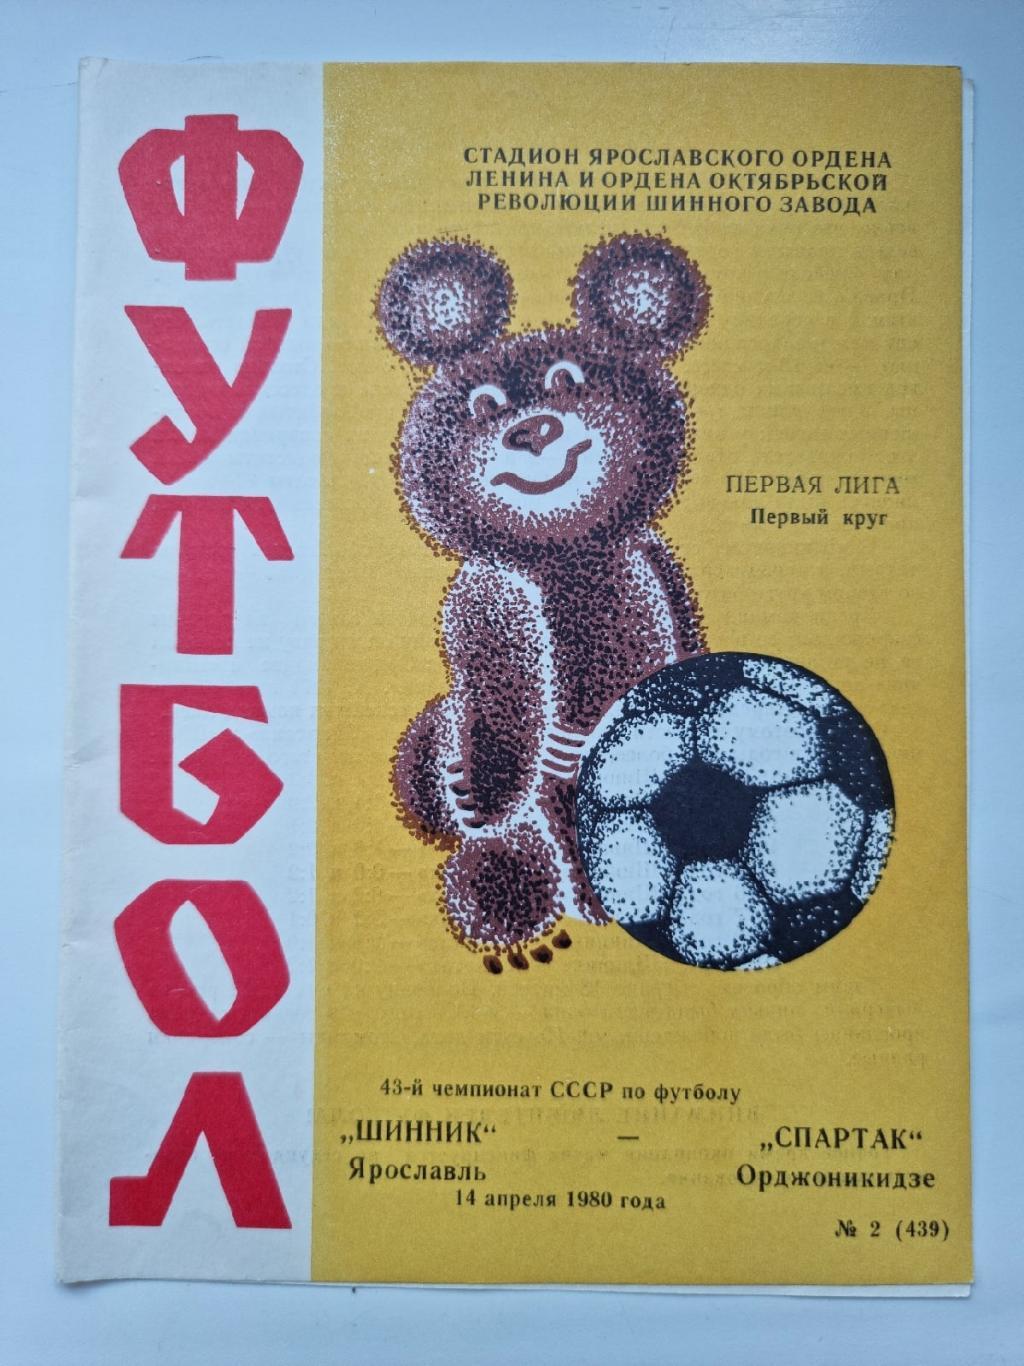 Шинник Ярославль - Спартак Орджоникидзе. 1980